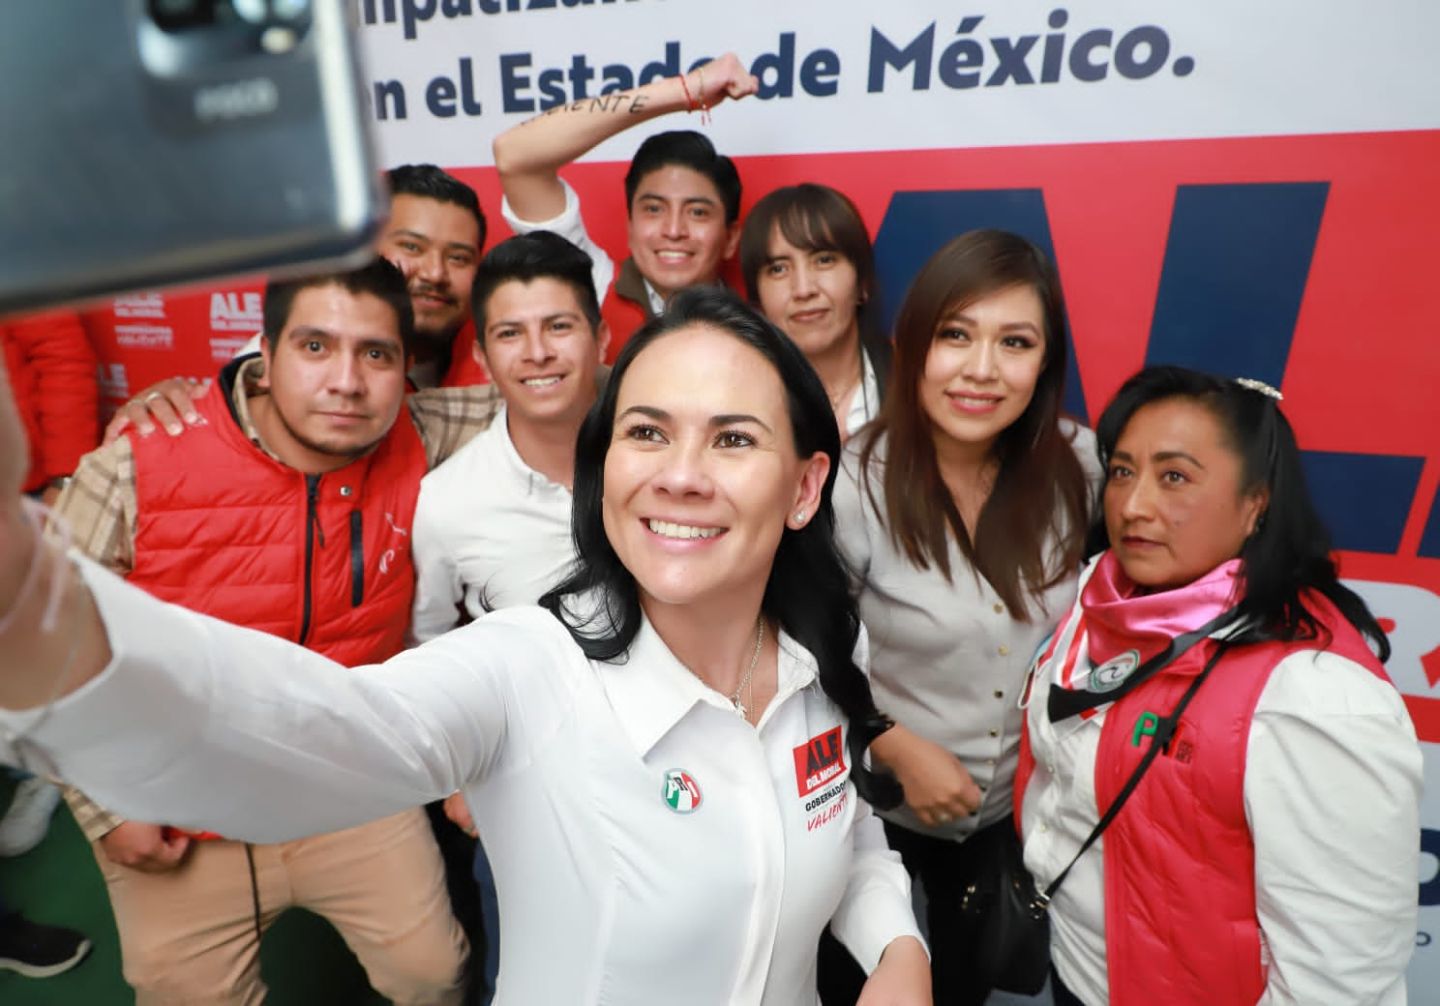 El priismo mexiquense tiene cimientos sólidos y trabaja con unidad, lealtad y compromiso: Alejandra del Moral 